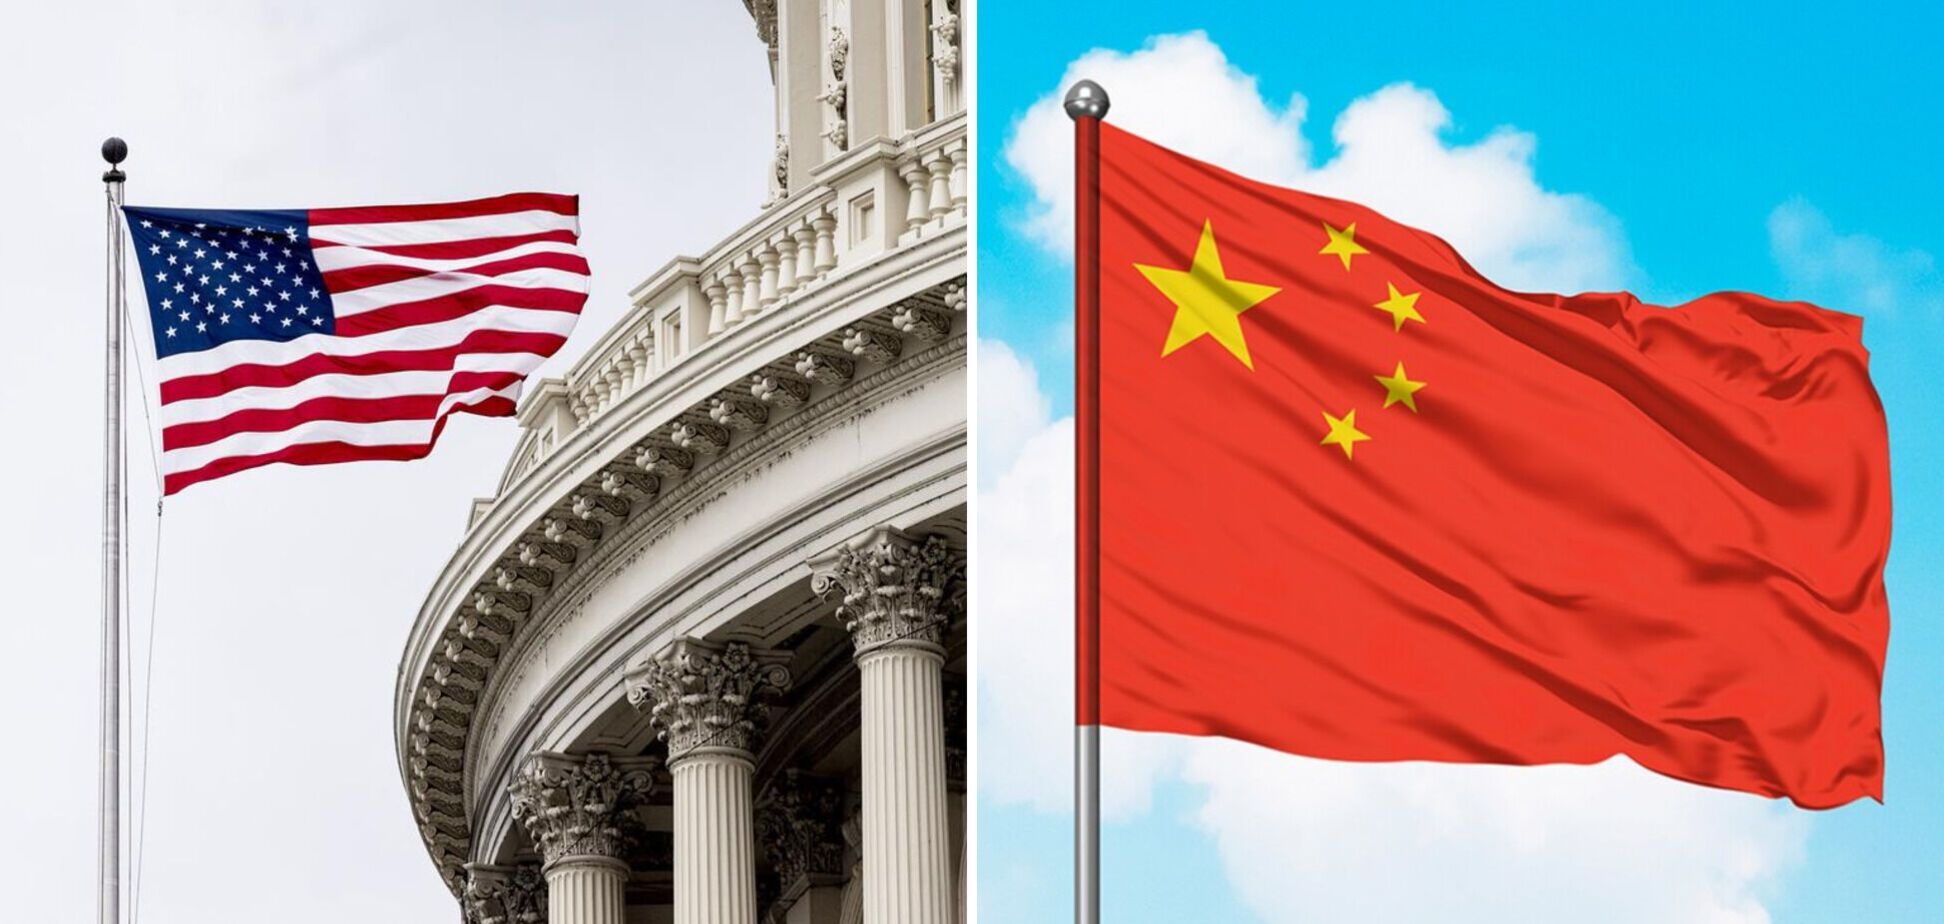 Соціальні рейтинги в США і Китаї: як діють і які обмеження встановлюють для громадян